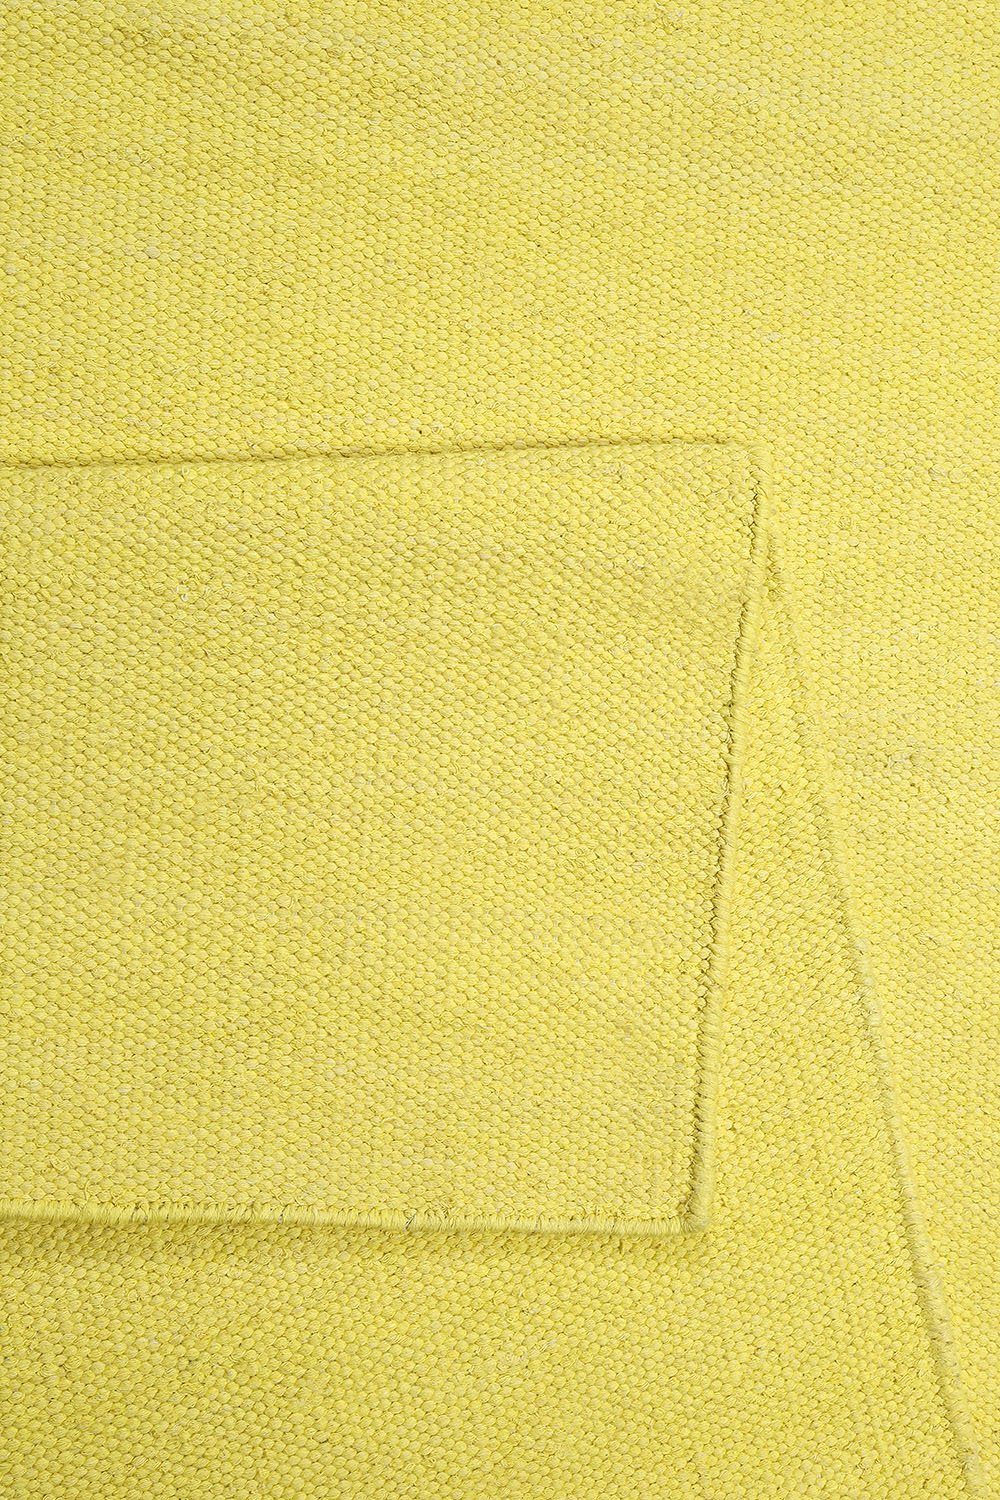 gelb mm, rechteckig, Höhe: Flachgewebe Baumwolle, einfarbig aus 5 Rainbow Esprit, Kinderzimmer, Kelim, Teppich 100% Wohnzimmer,